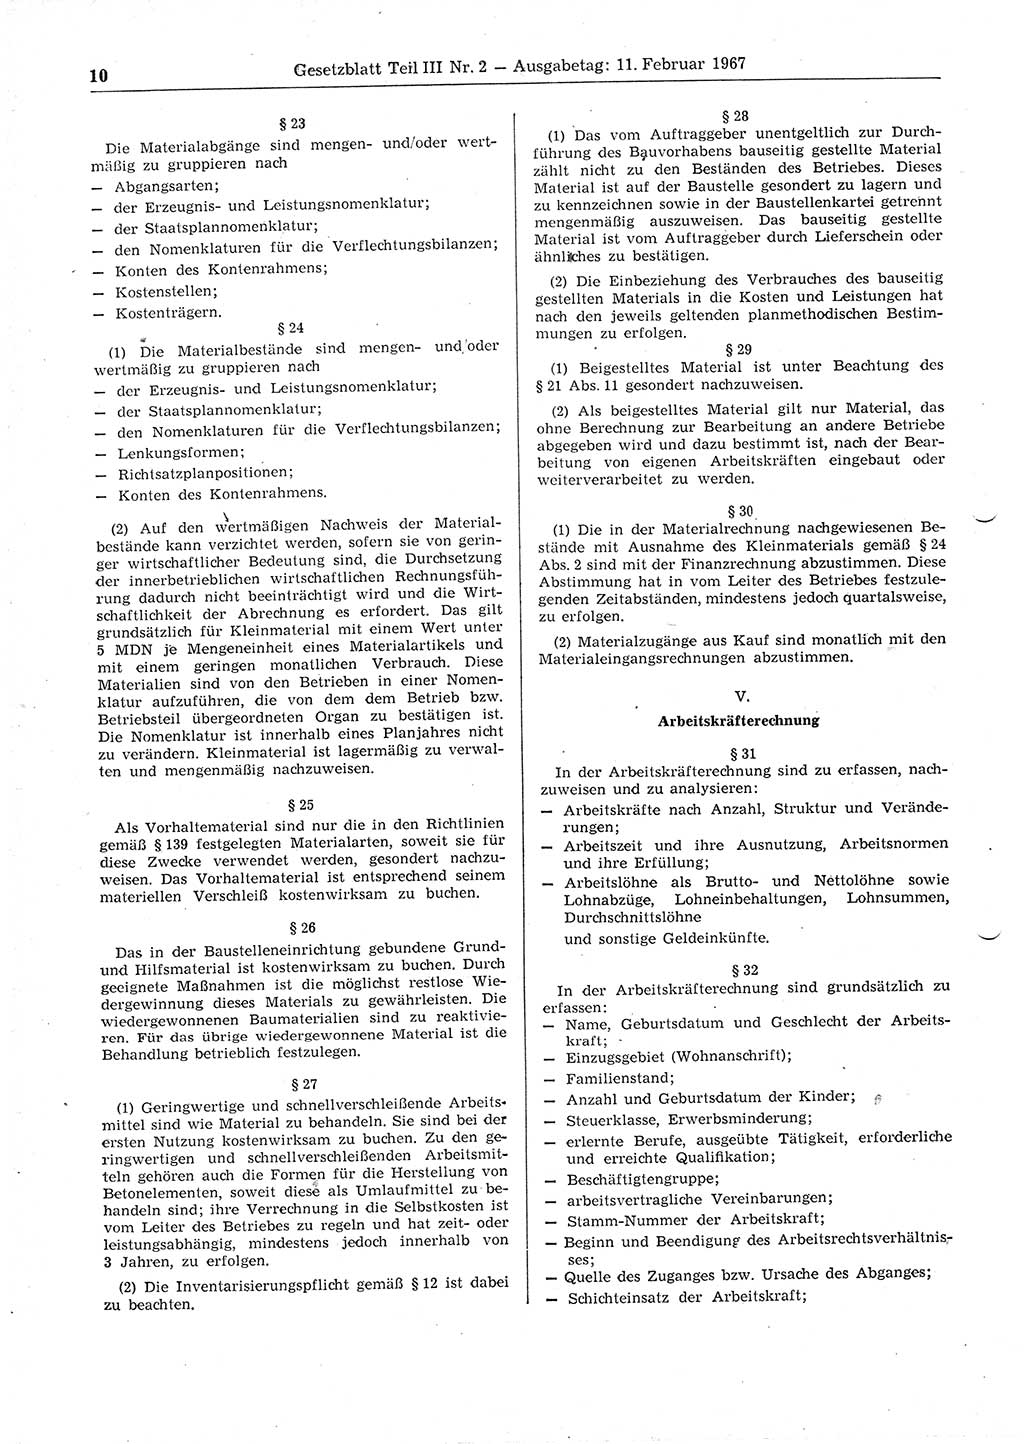 Gesetzblatt (GBl.) der Deutschen Demokratischen Republik (DDR) Teil ⅠⅠⅠ 1967, Seite 10 (GBl. DDR ⅠⅠⅠ 1967, S. 10)